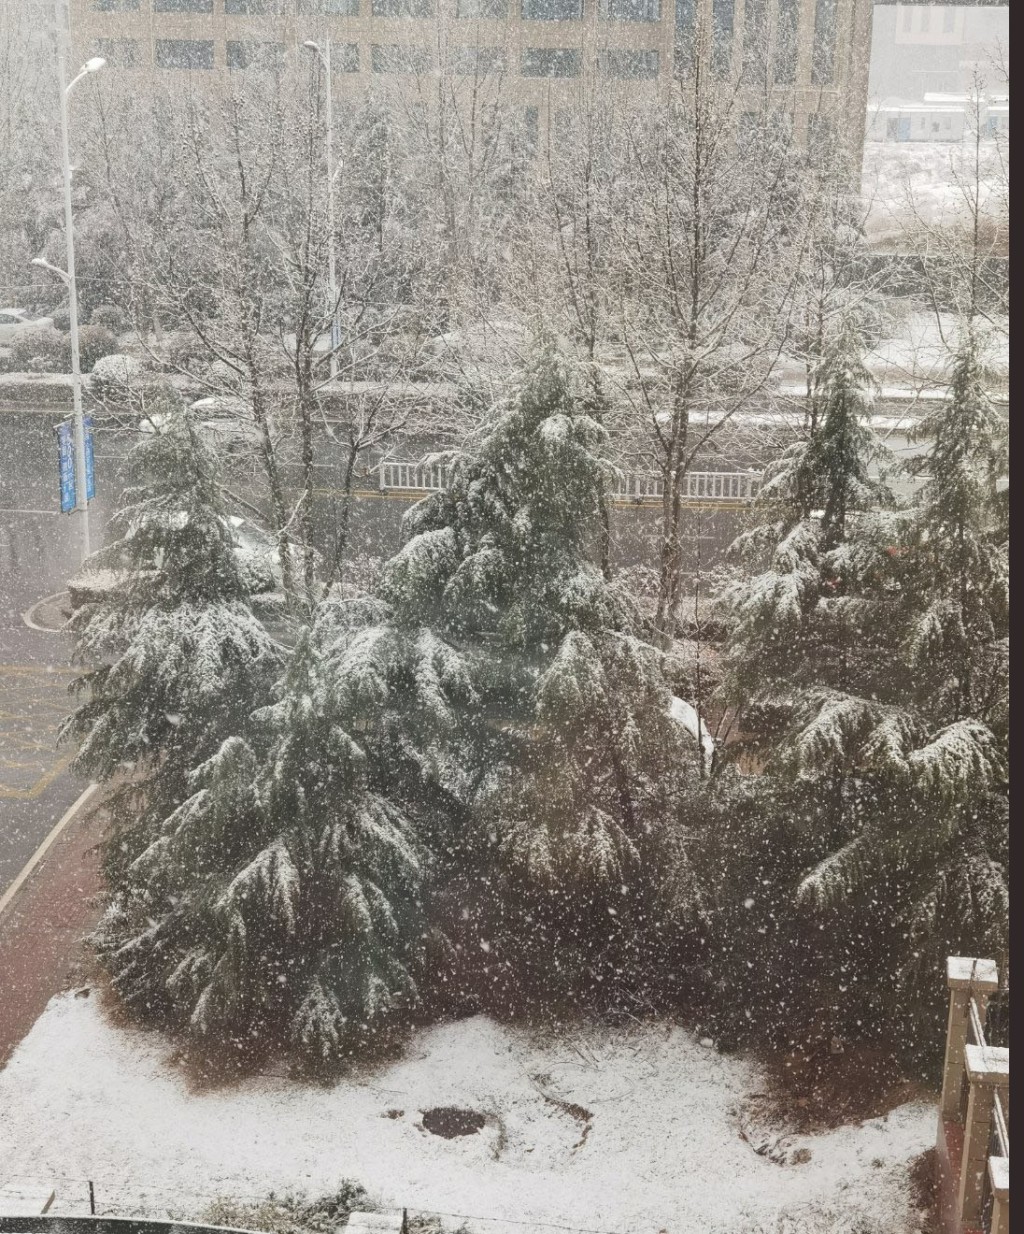 網民分享下雪的情況。 微博圖